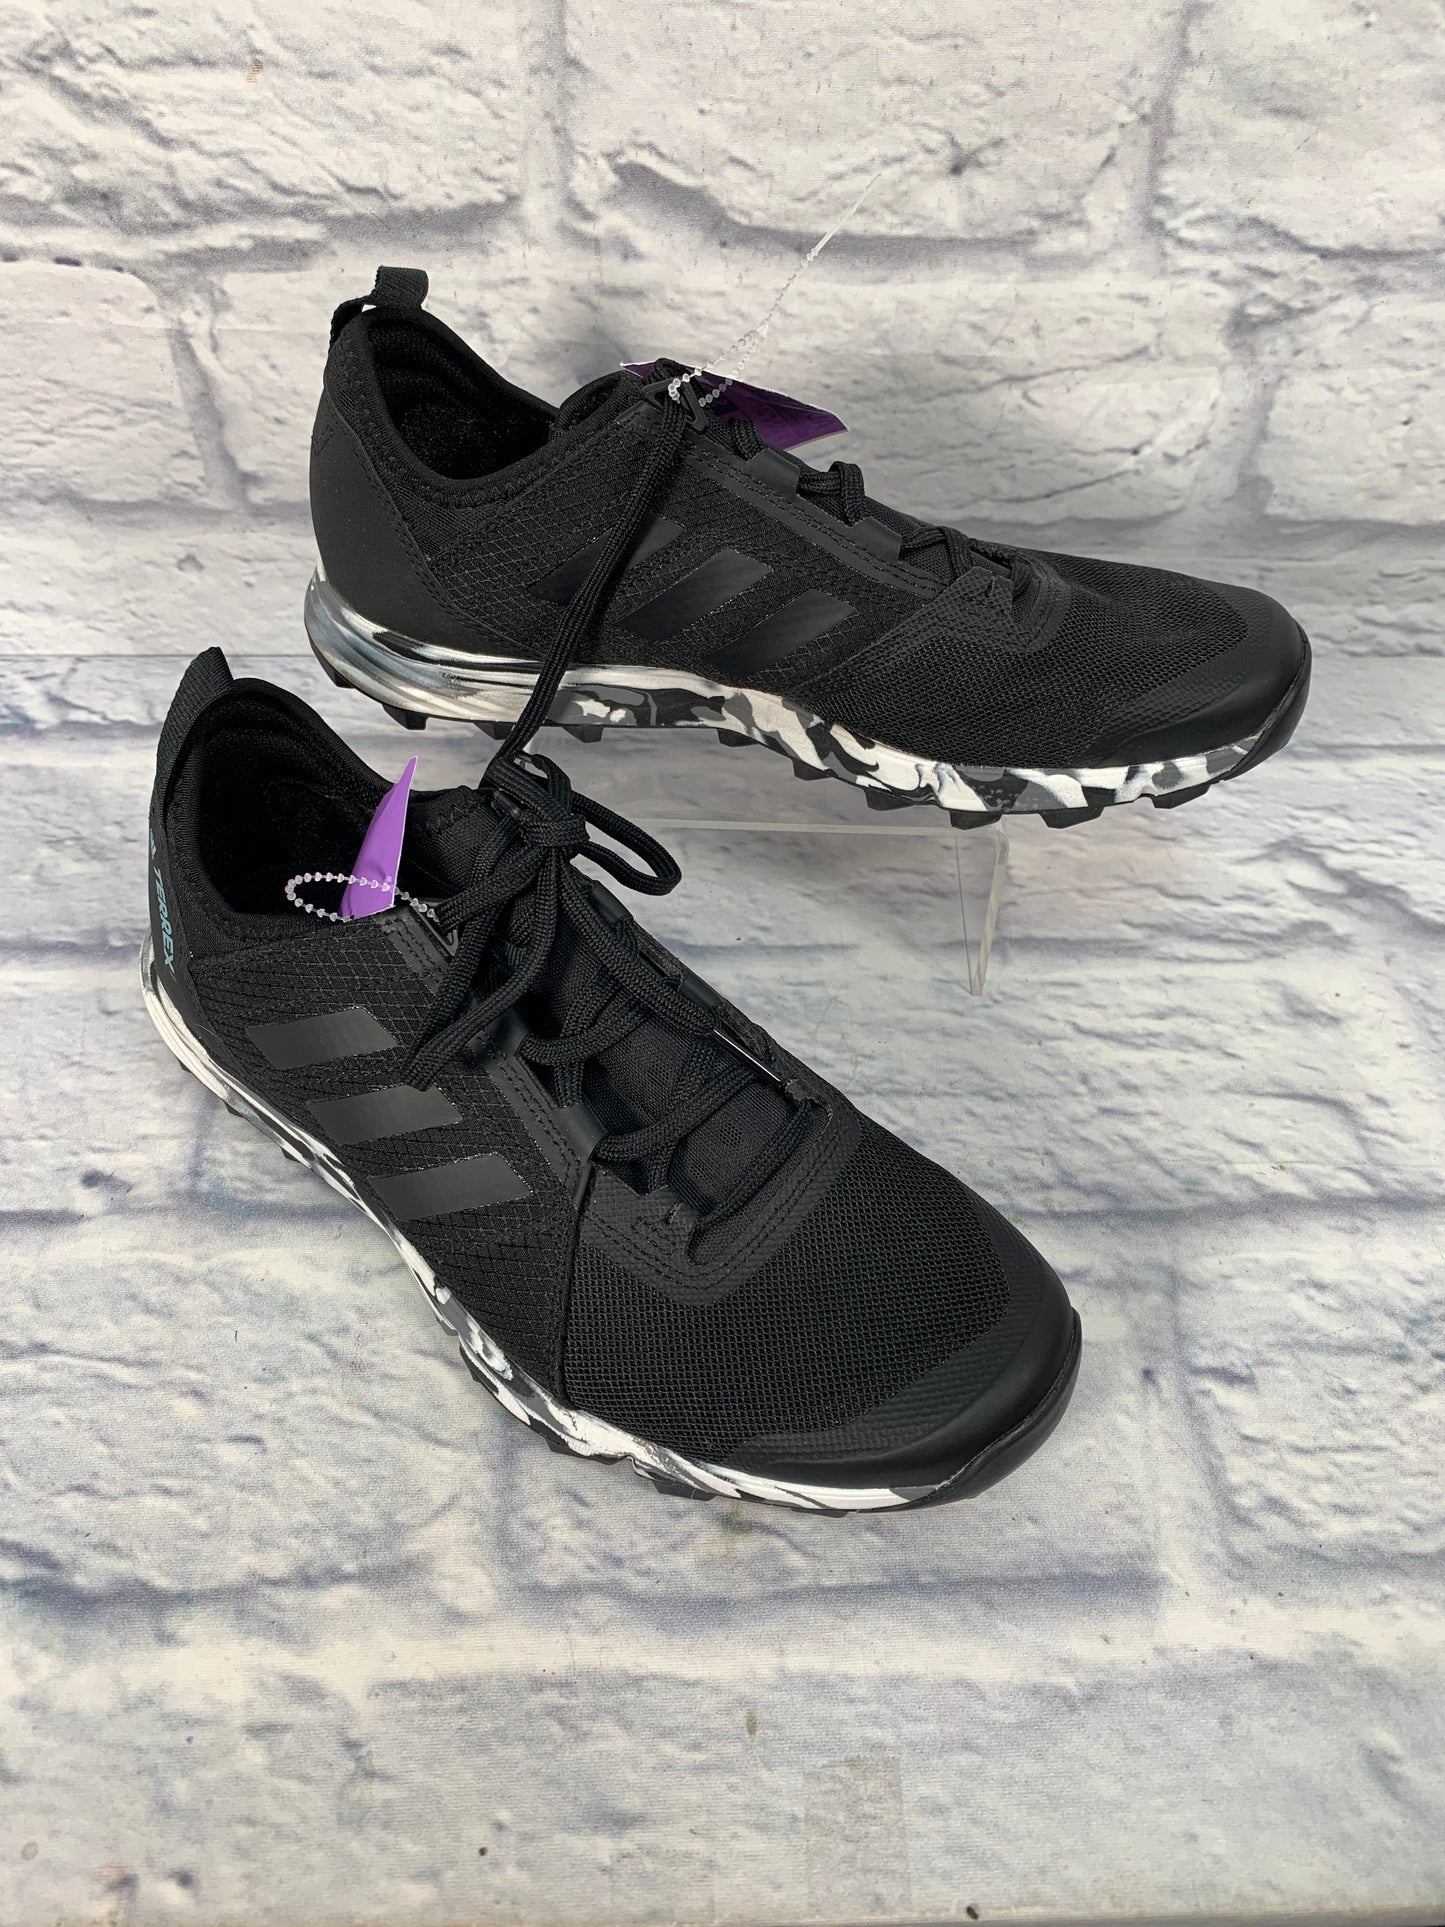 Black & Grey Shoes Athletic Adidas, Size 7.5